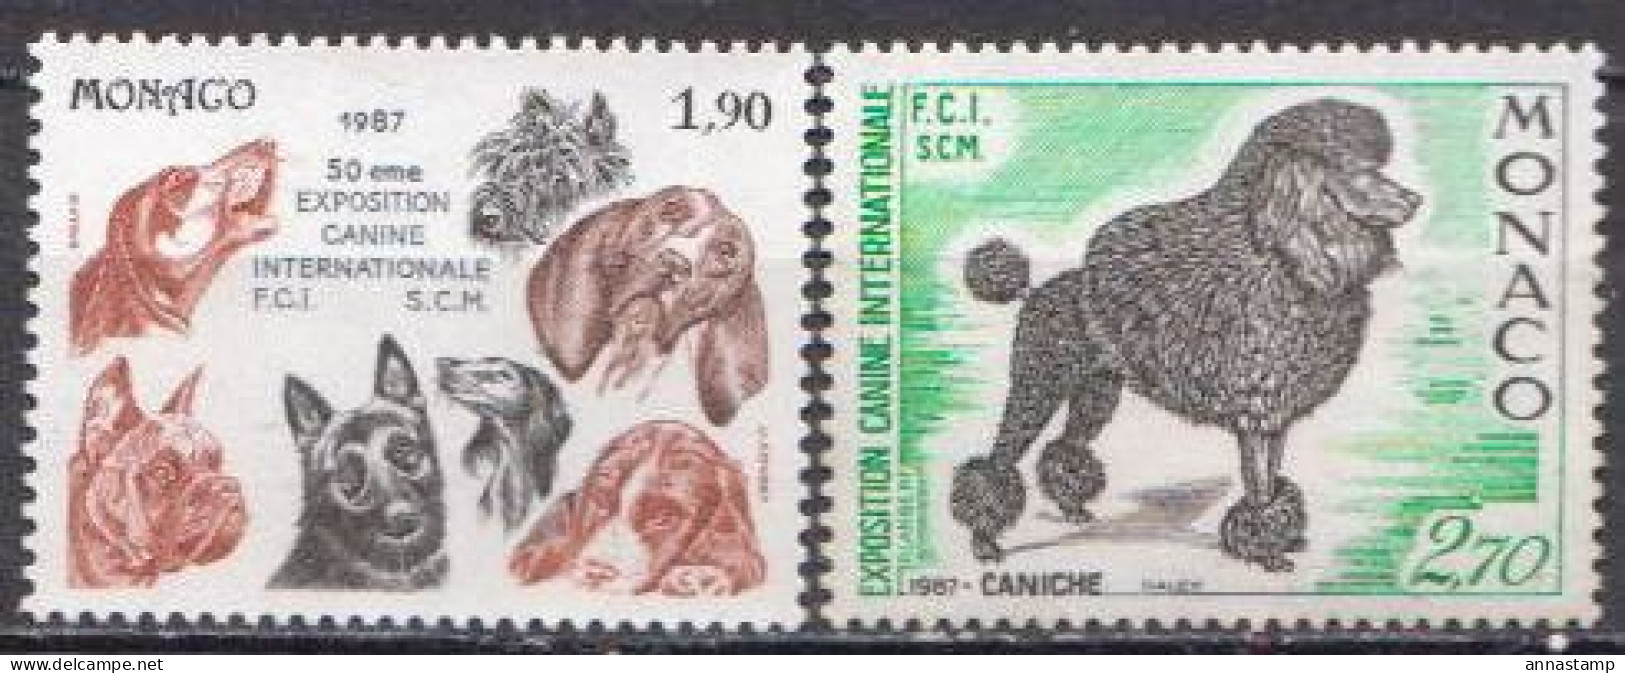 Monaco MNH Stamps - Hunde